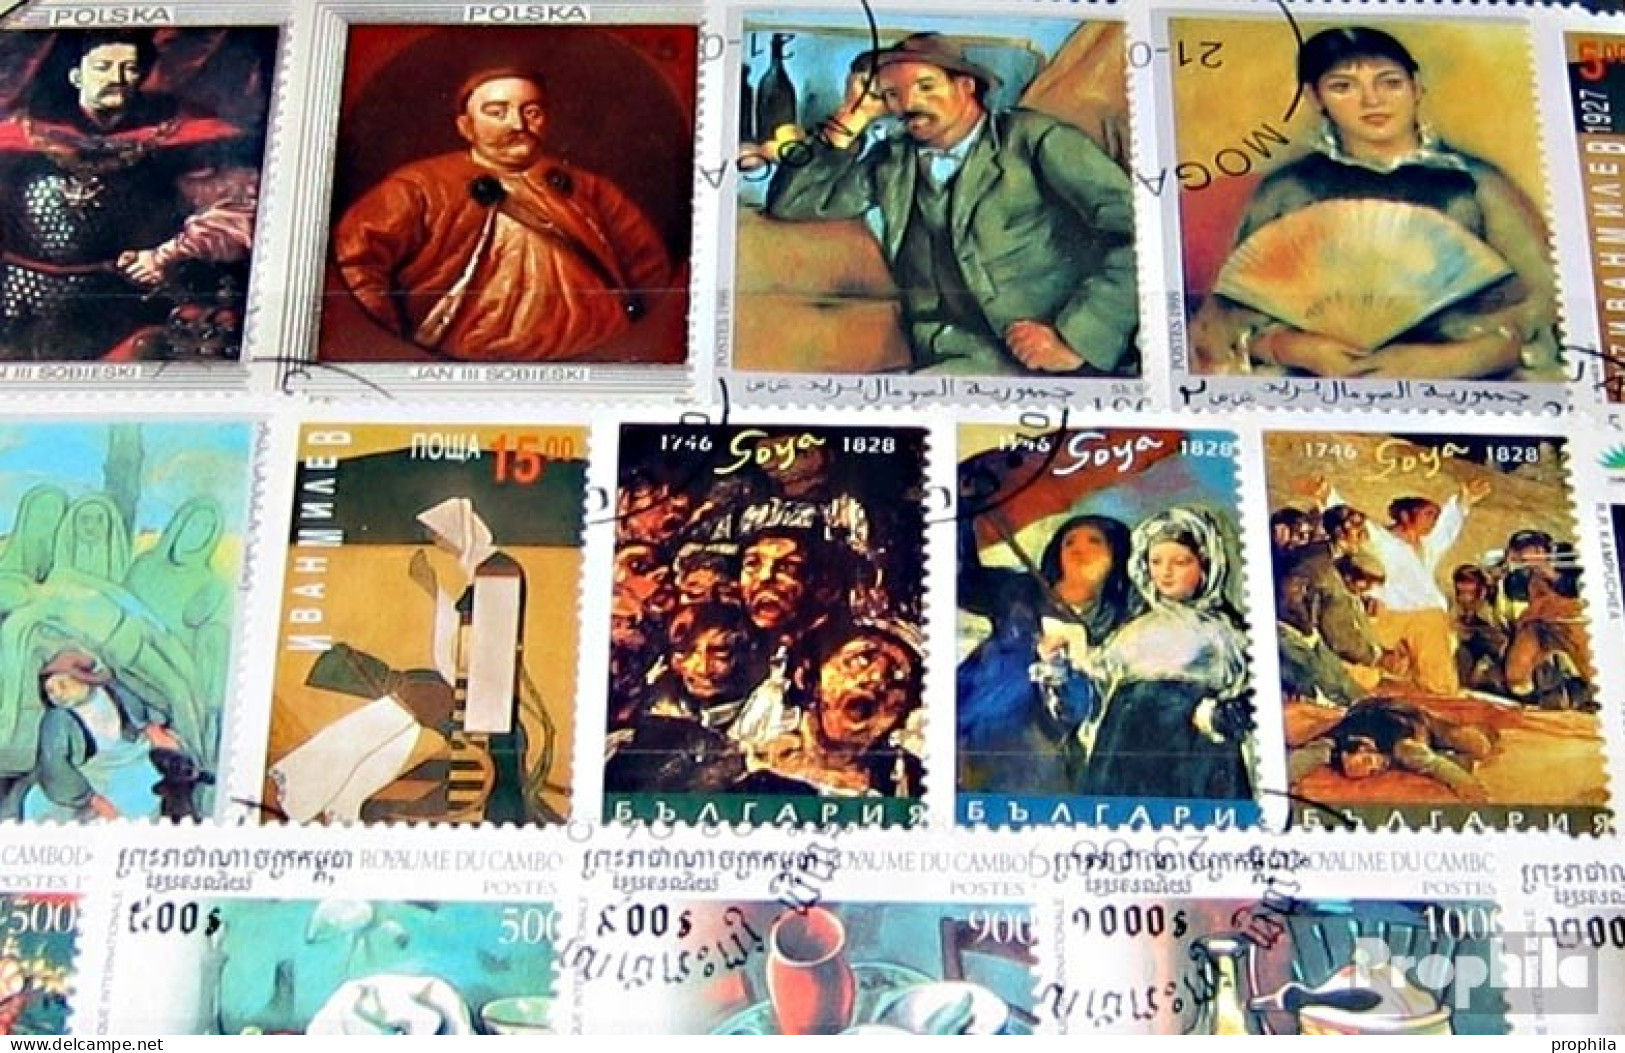 Motive Briefmarken-200 Verschiedene Gemälde Marken - Gemälde